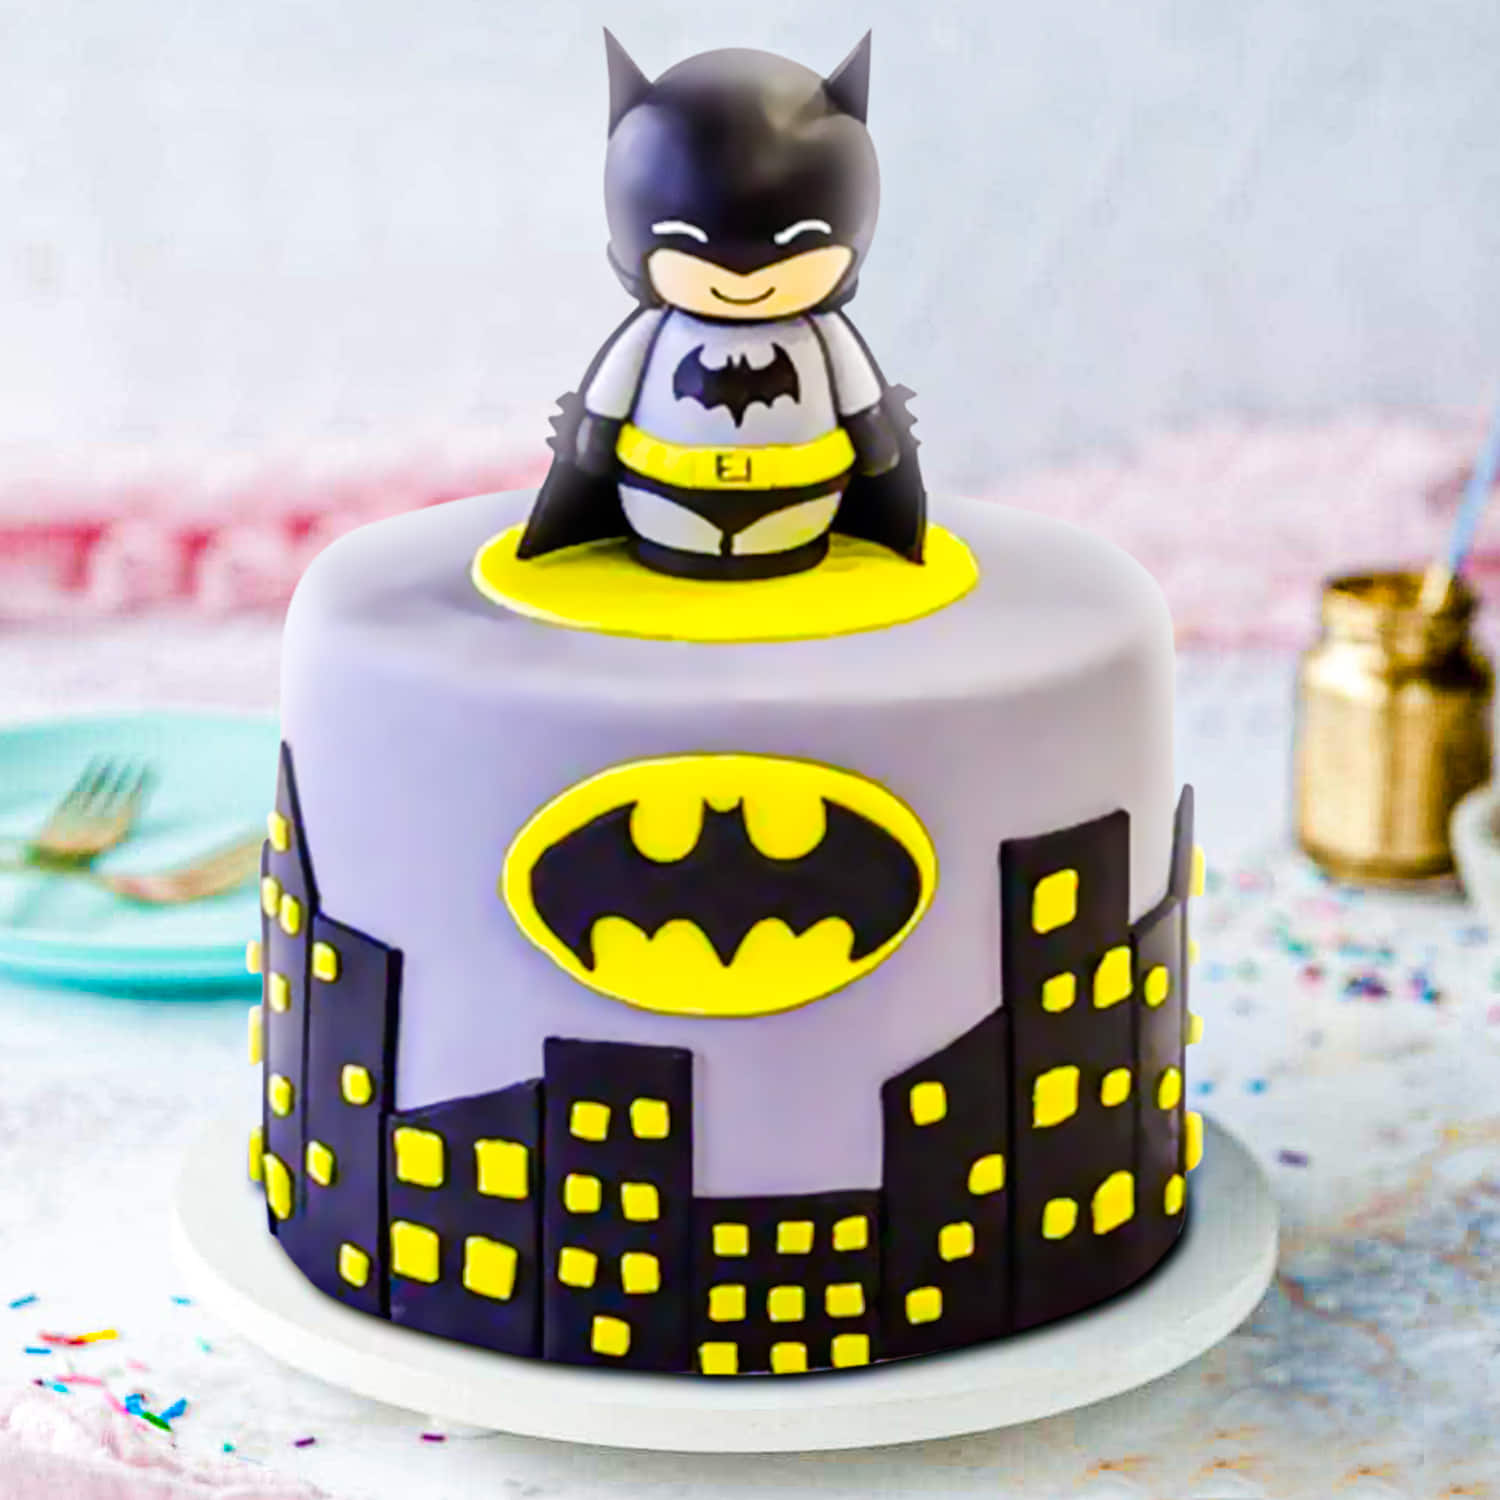 Superhero Cake - Decorated Cake by The Cake Hut - CakesDecor